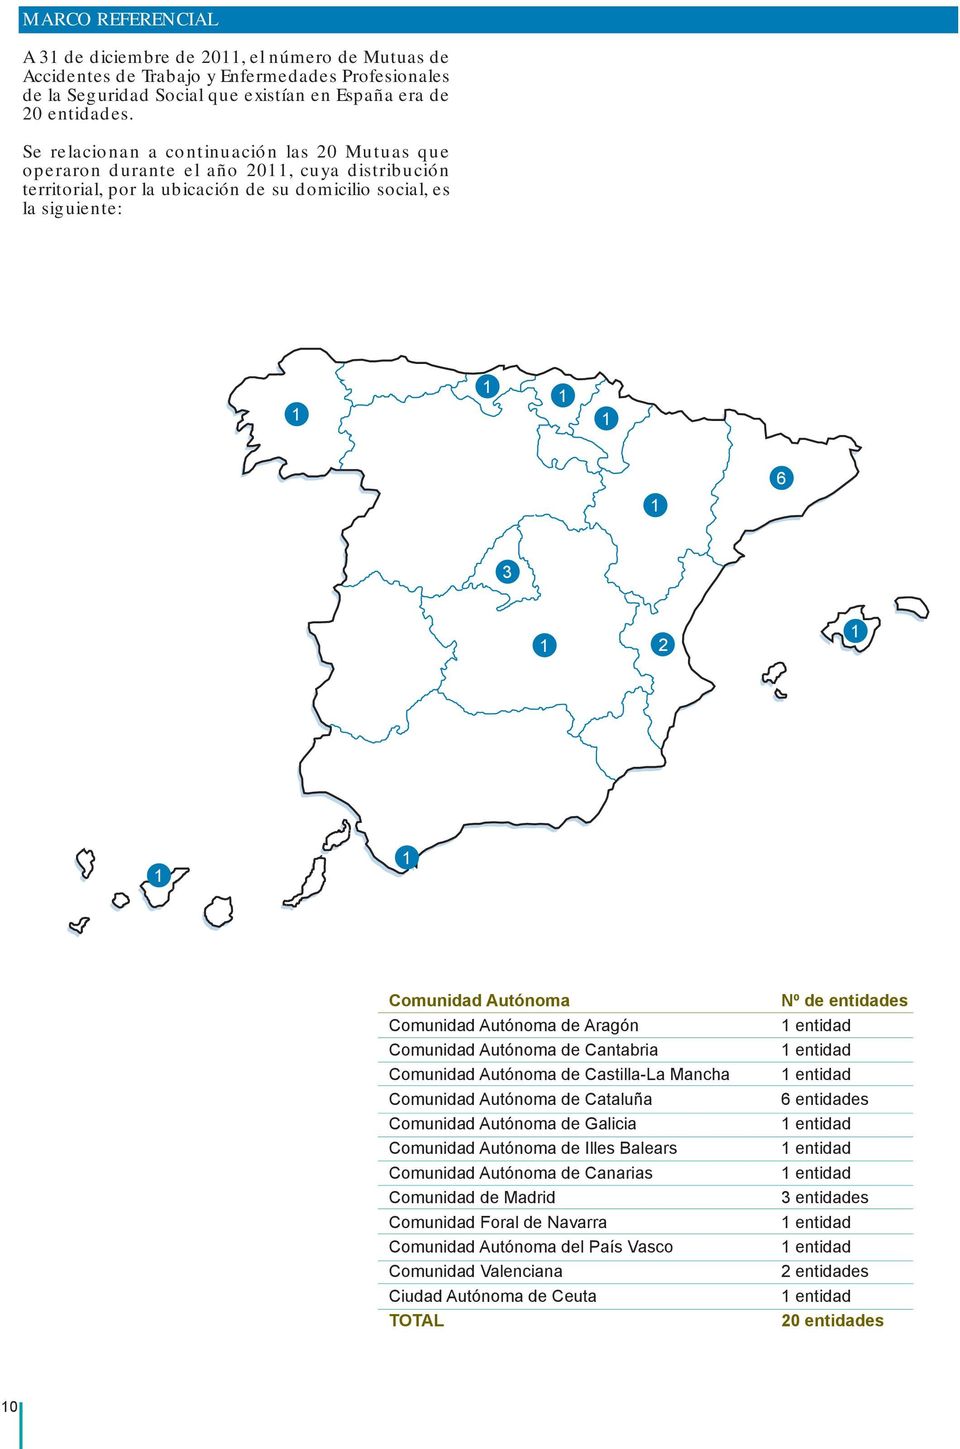 Comunidad Autónoma Comunidad Autónoma de Aragón Comunidad Autónoma de Cantabria Comunidad Autónoma de Castilla-La Mancha Comunidad Autónoma de Cataluña Comunidad Autónoma de Galicia Comunidad